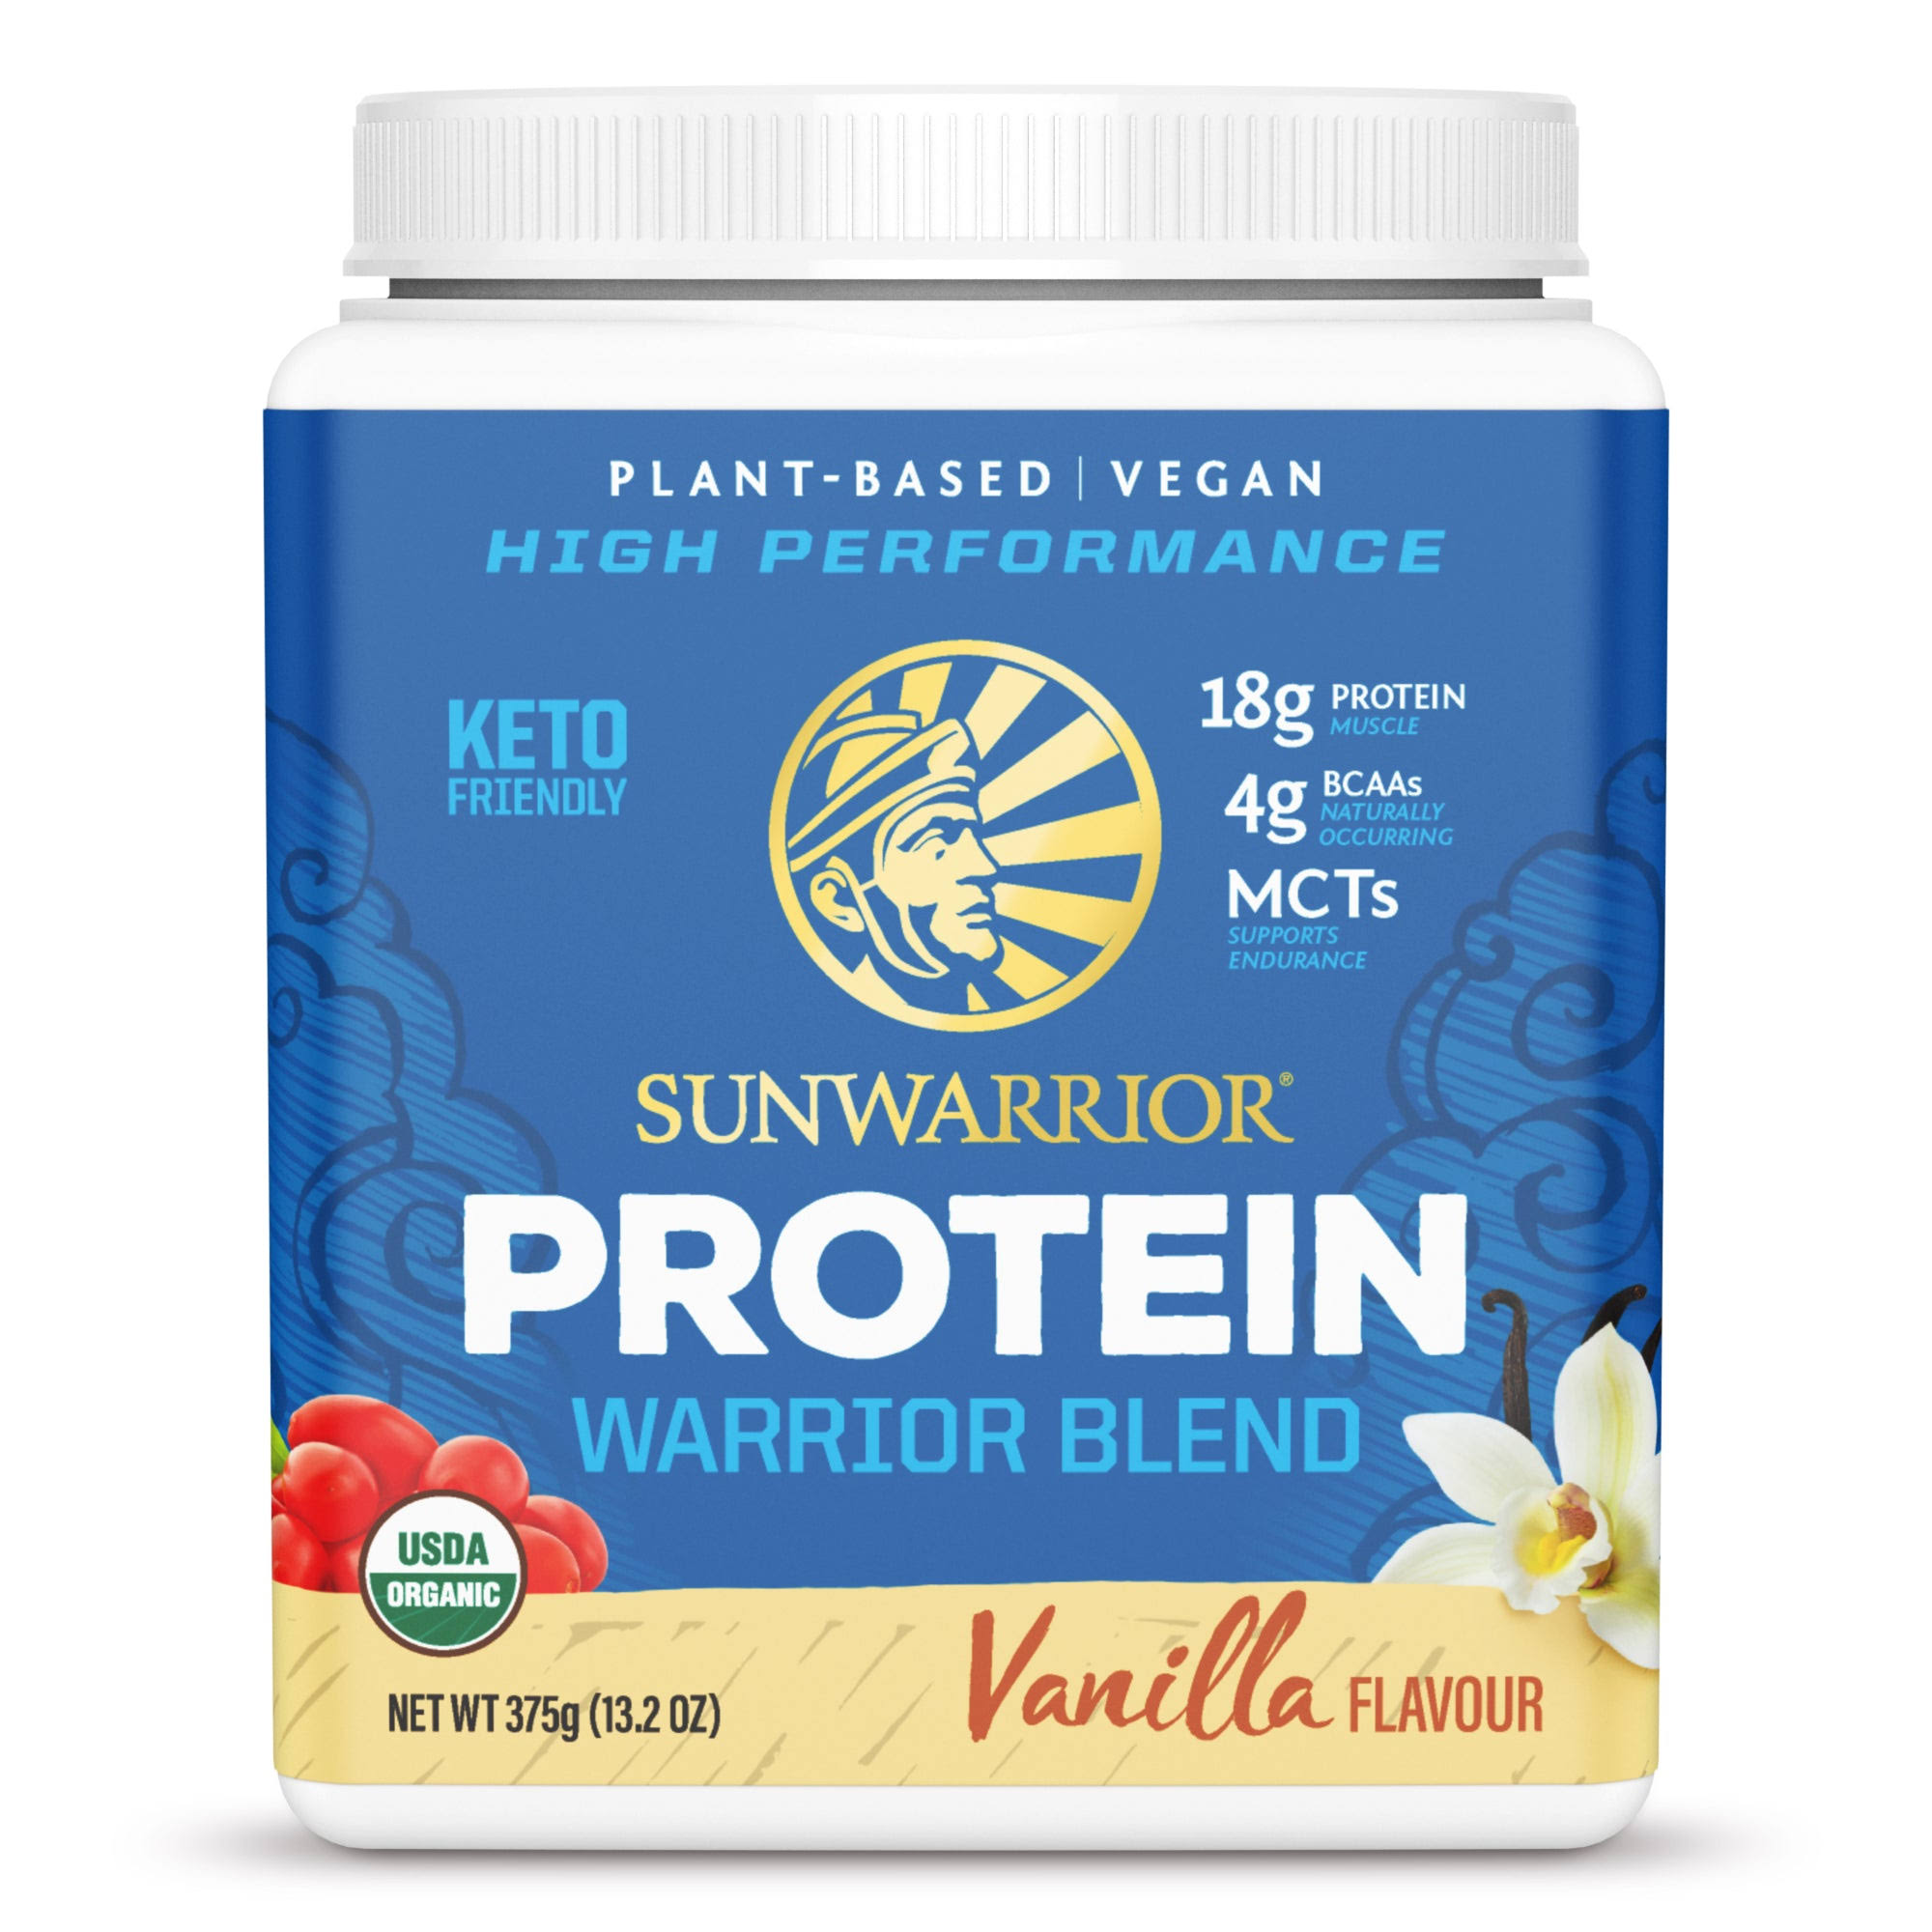 Warrior Blend Protein Sunwarrior Vanilla 375g